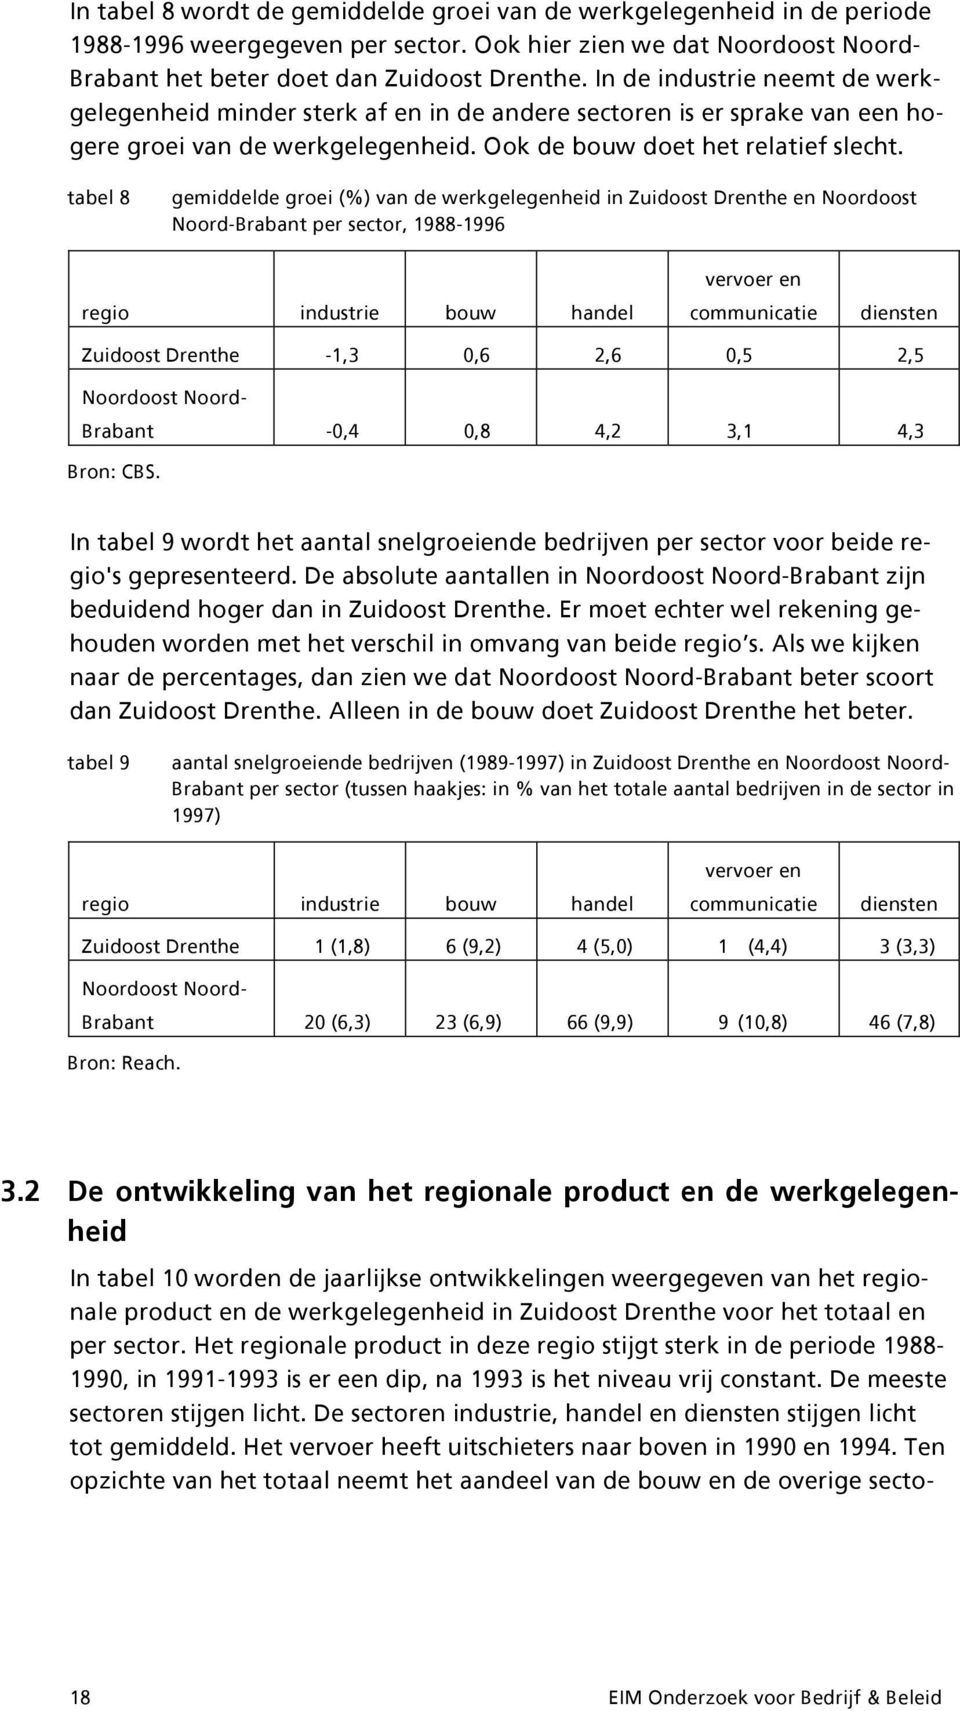 tabel 8 gemiddelde groei (%) van de werkgelegenheid in Zuidoost Drenthe en Noordoost Noord-Brabant per sector, 1988-1996 regio industrie bouw handel vervoer en communicatie diensten Zuidoost Drenthe